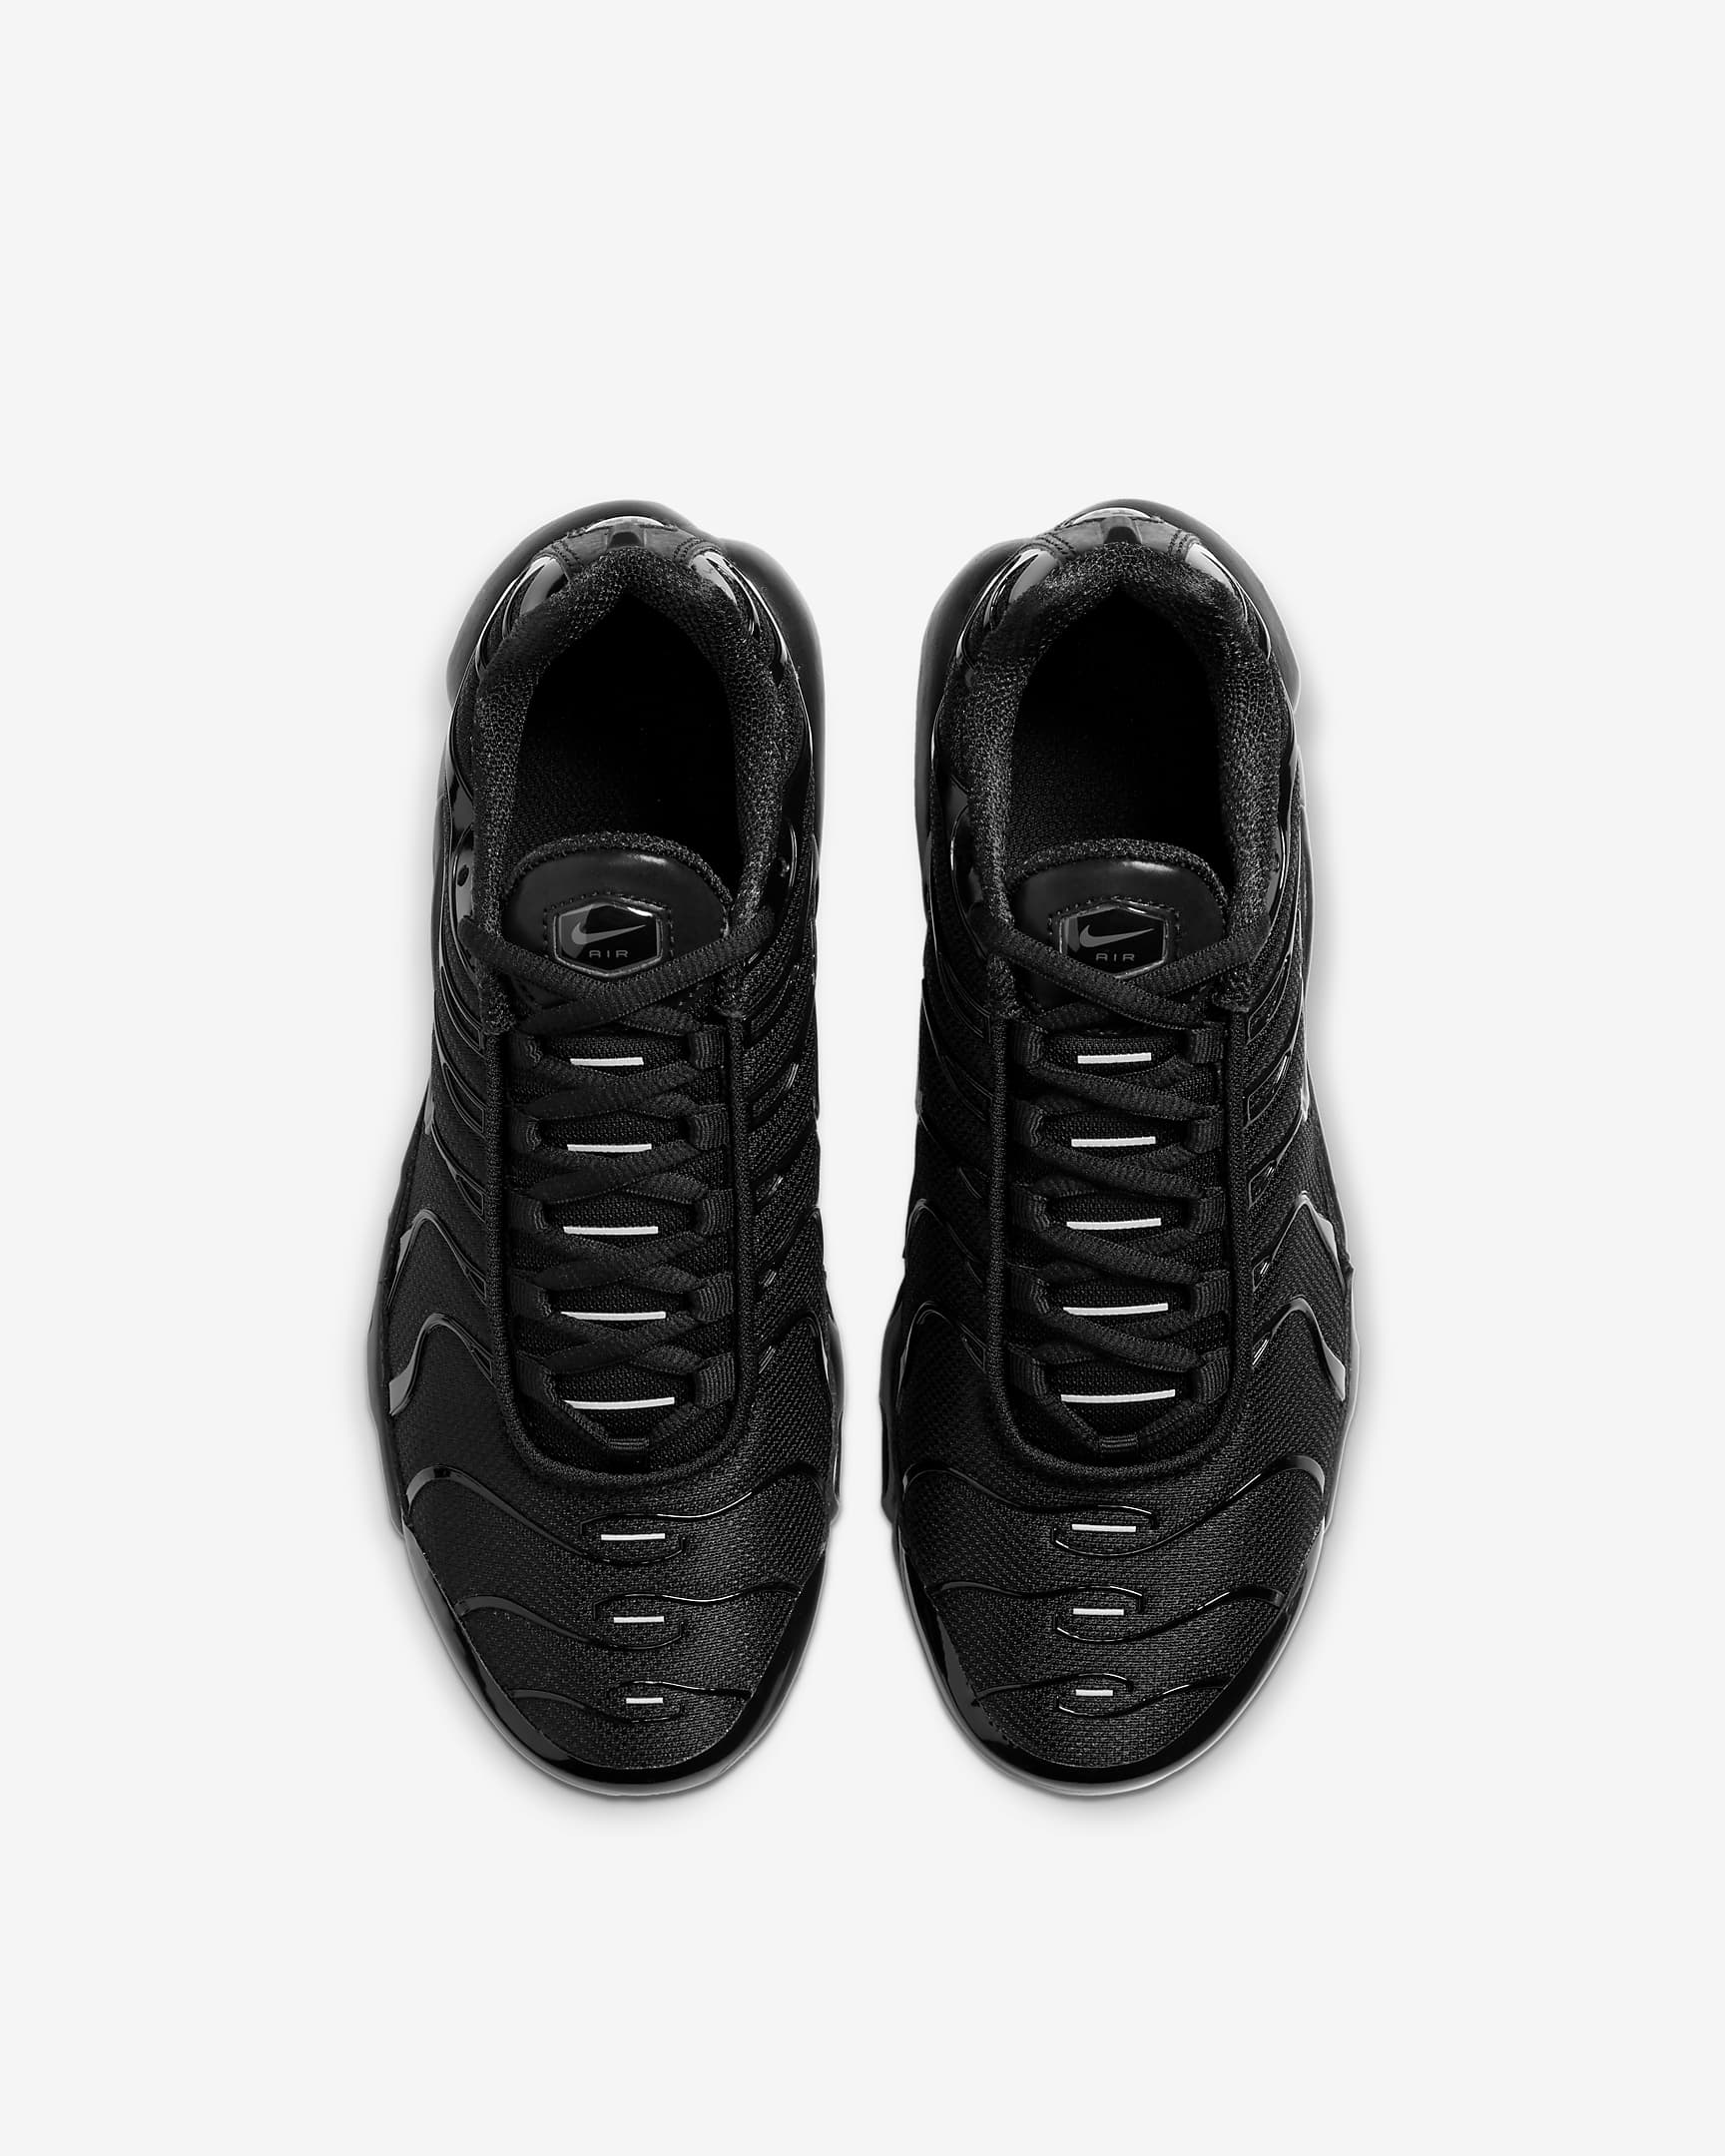 Nike Air Max Plus Big Kids' Shoes - Black/Black/Black